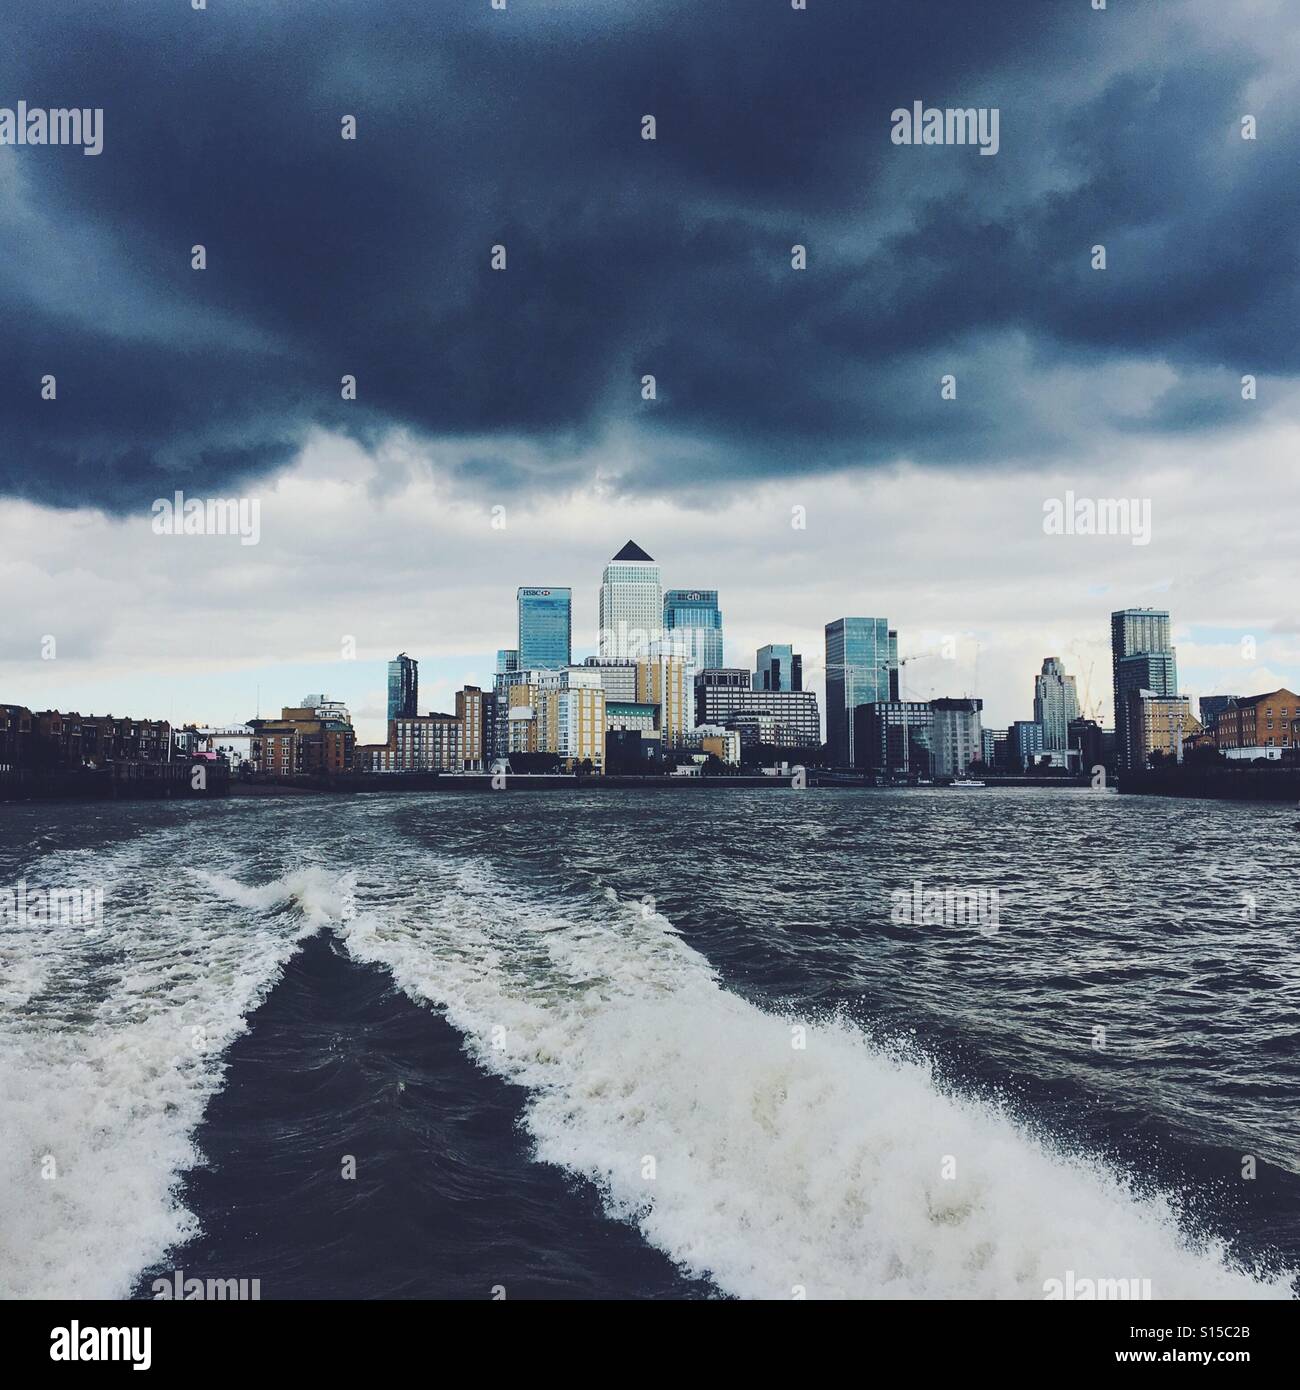 London Docklands skyline visto da una barca sul fiume Tamigi, con nuvole temporalesche sopra. Foto Stock